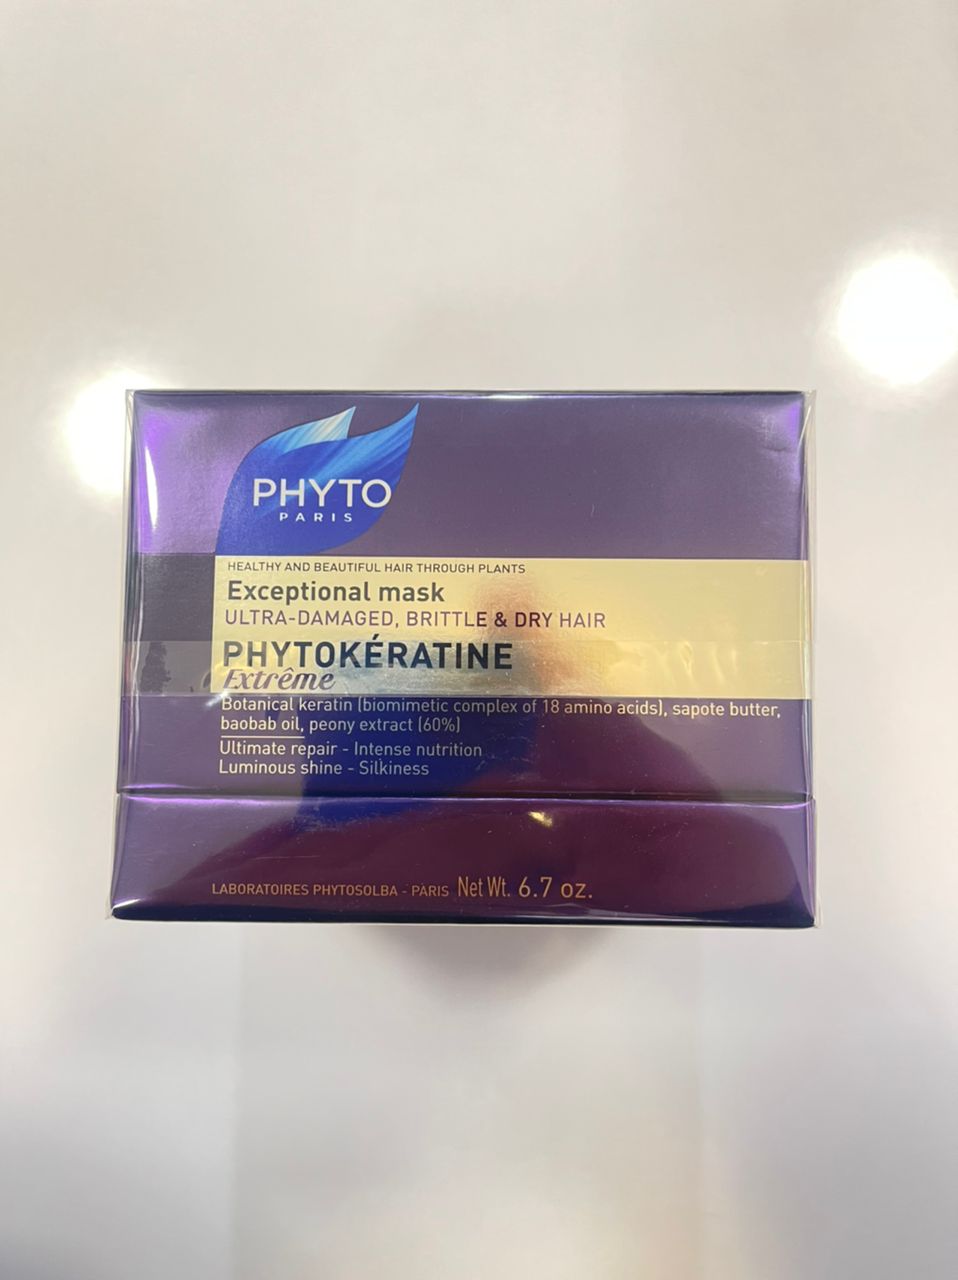 ماسک موی فیتو Phyto مول فیتو کراتین اکستریم Phytokeratine extreme حجم 200 میل | ترمیم قوی مو